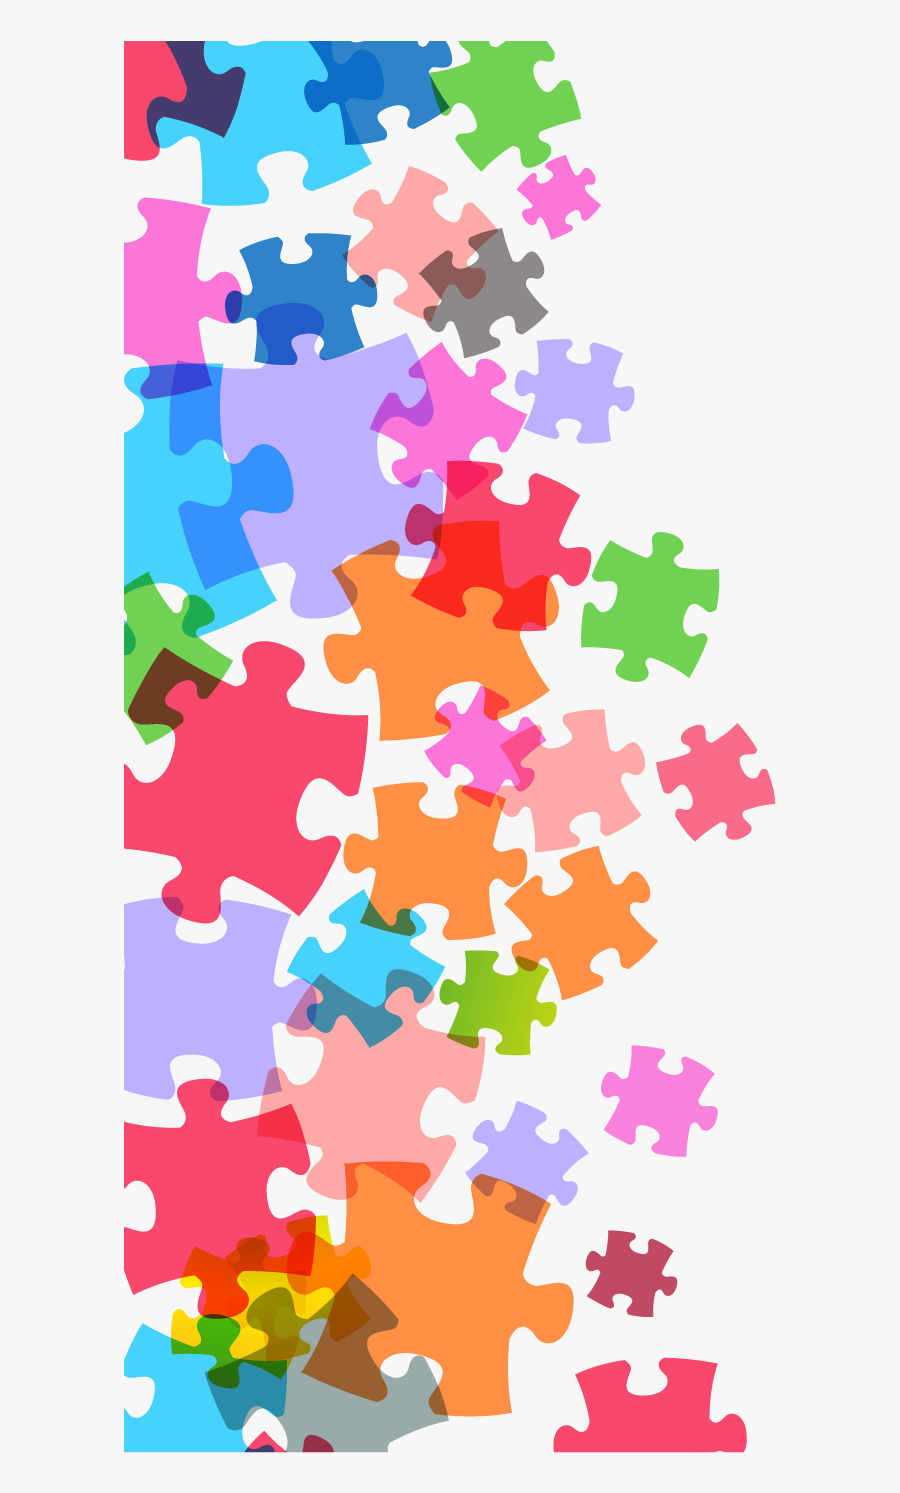 Jigsaw Png Transparent Free - Puzzle Pieces Transparent Background, Transparent Clipart